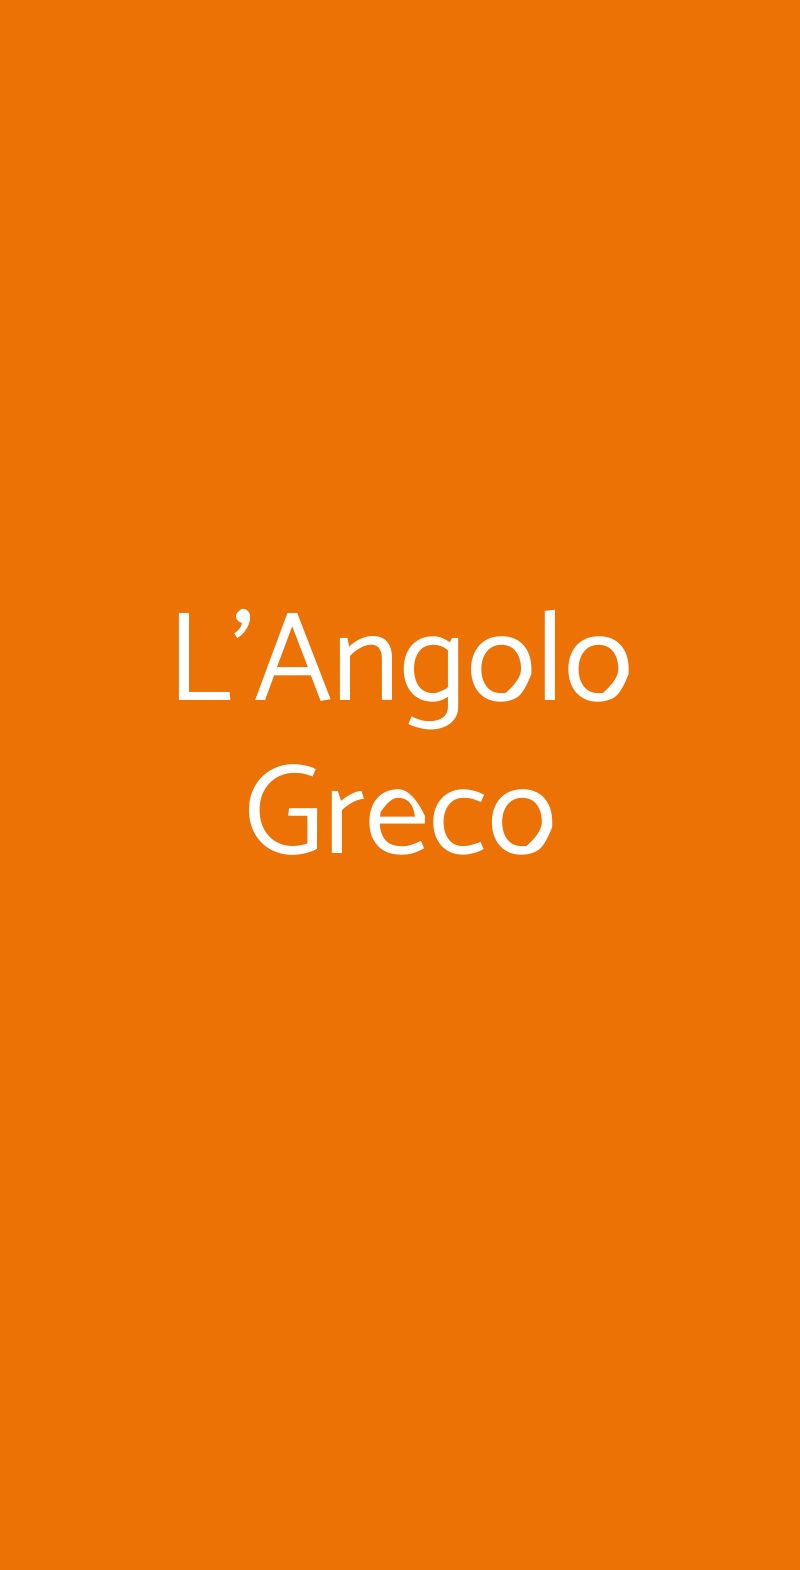 L'Angolo Greco Venezia menù 1 pagina